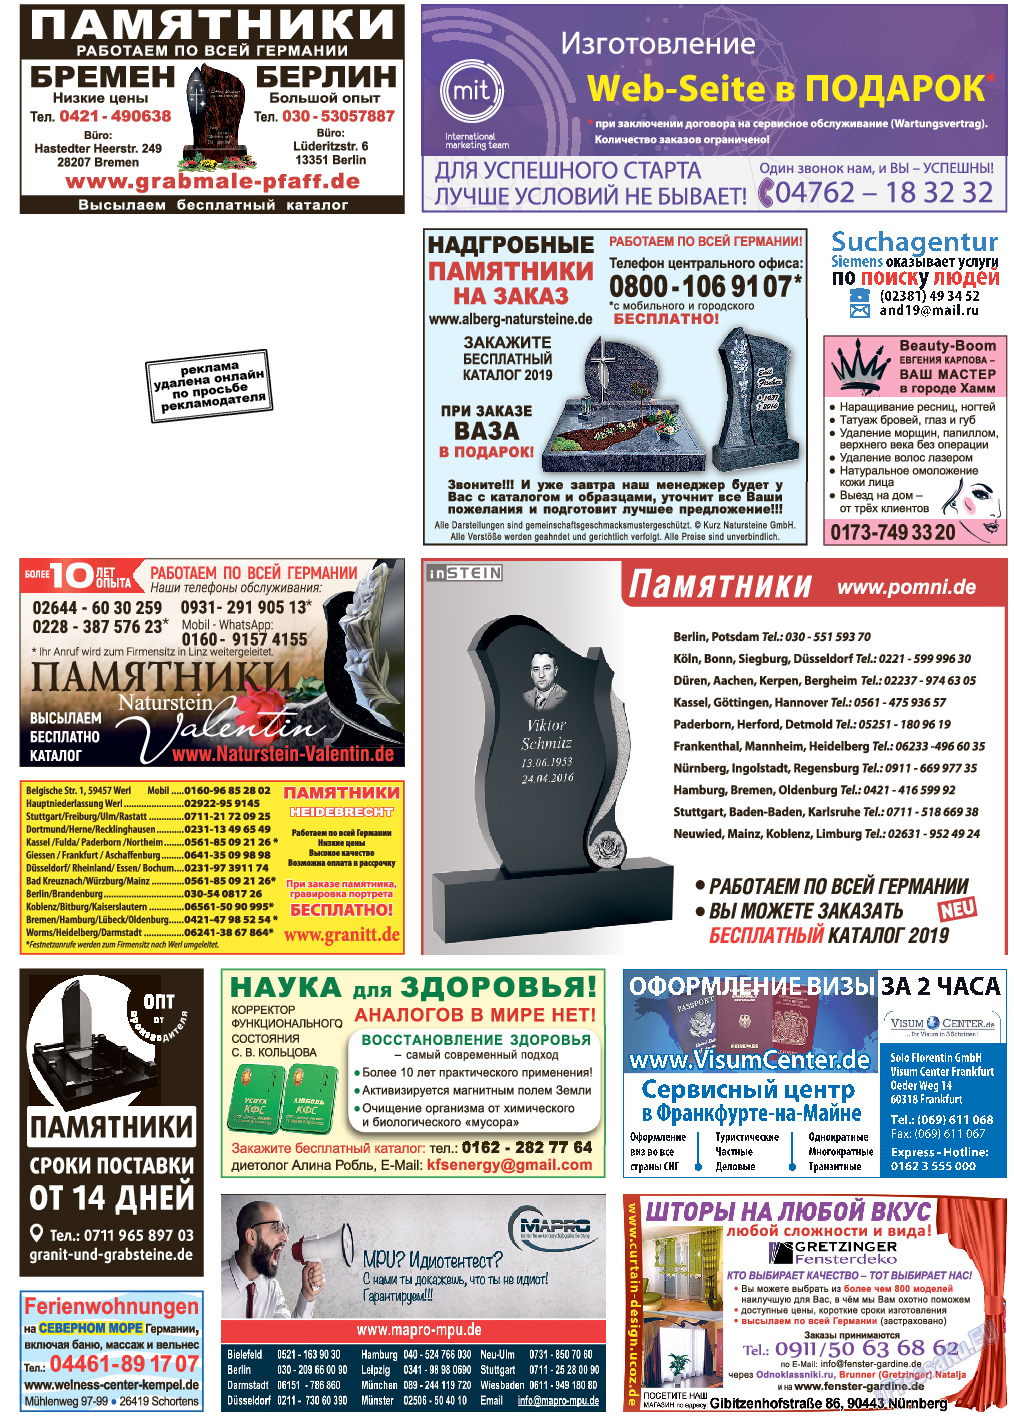 Переселенческий вестник, газета. 2019 №2 стр.30